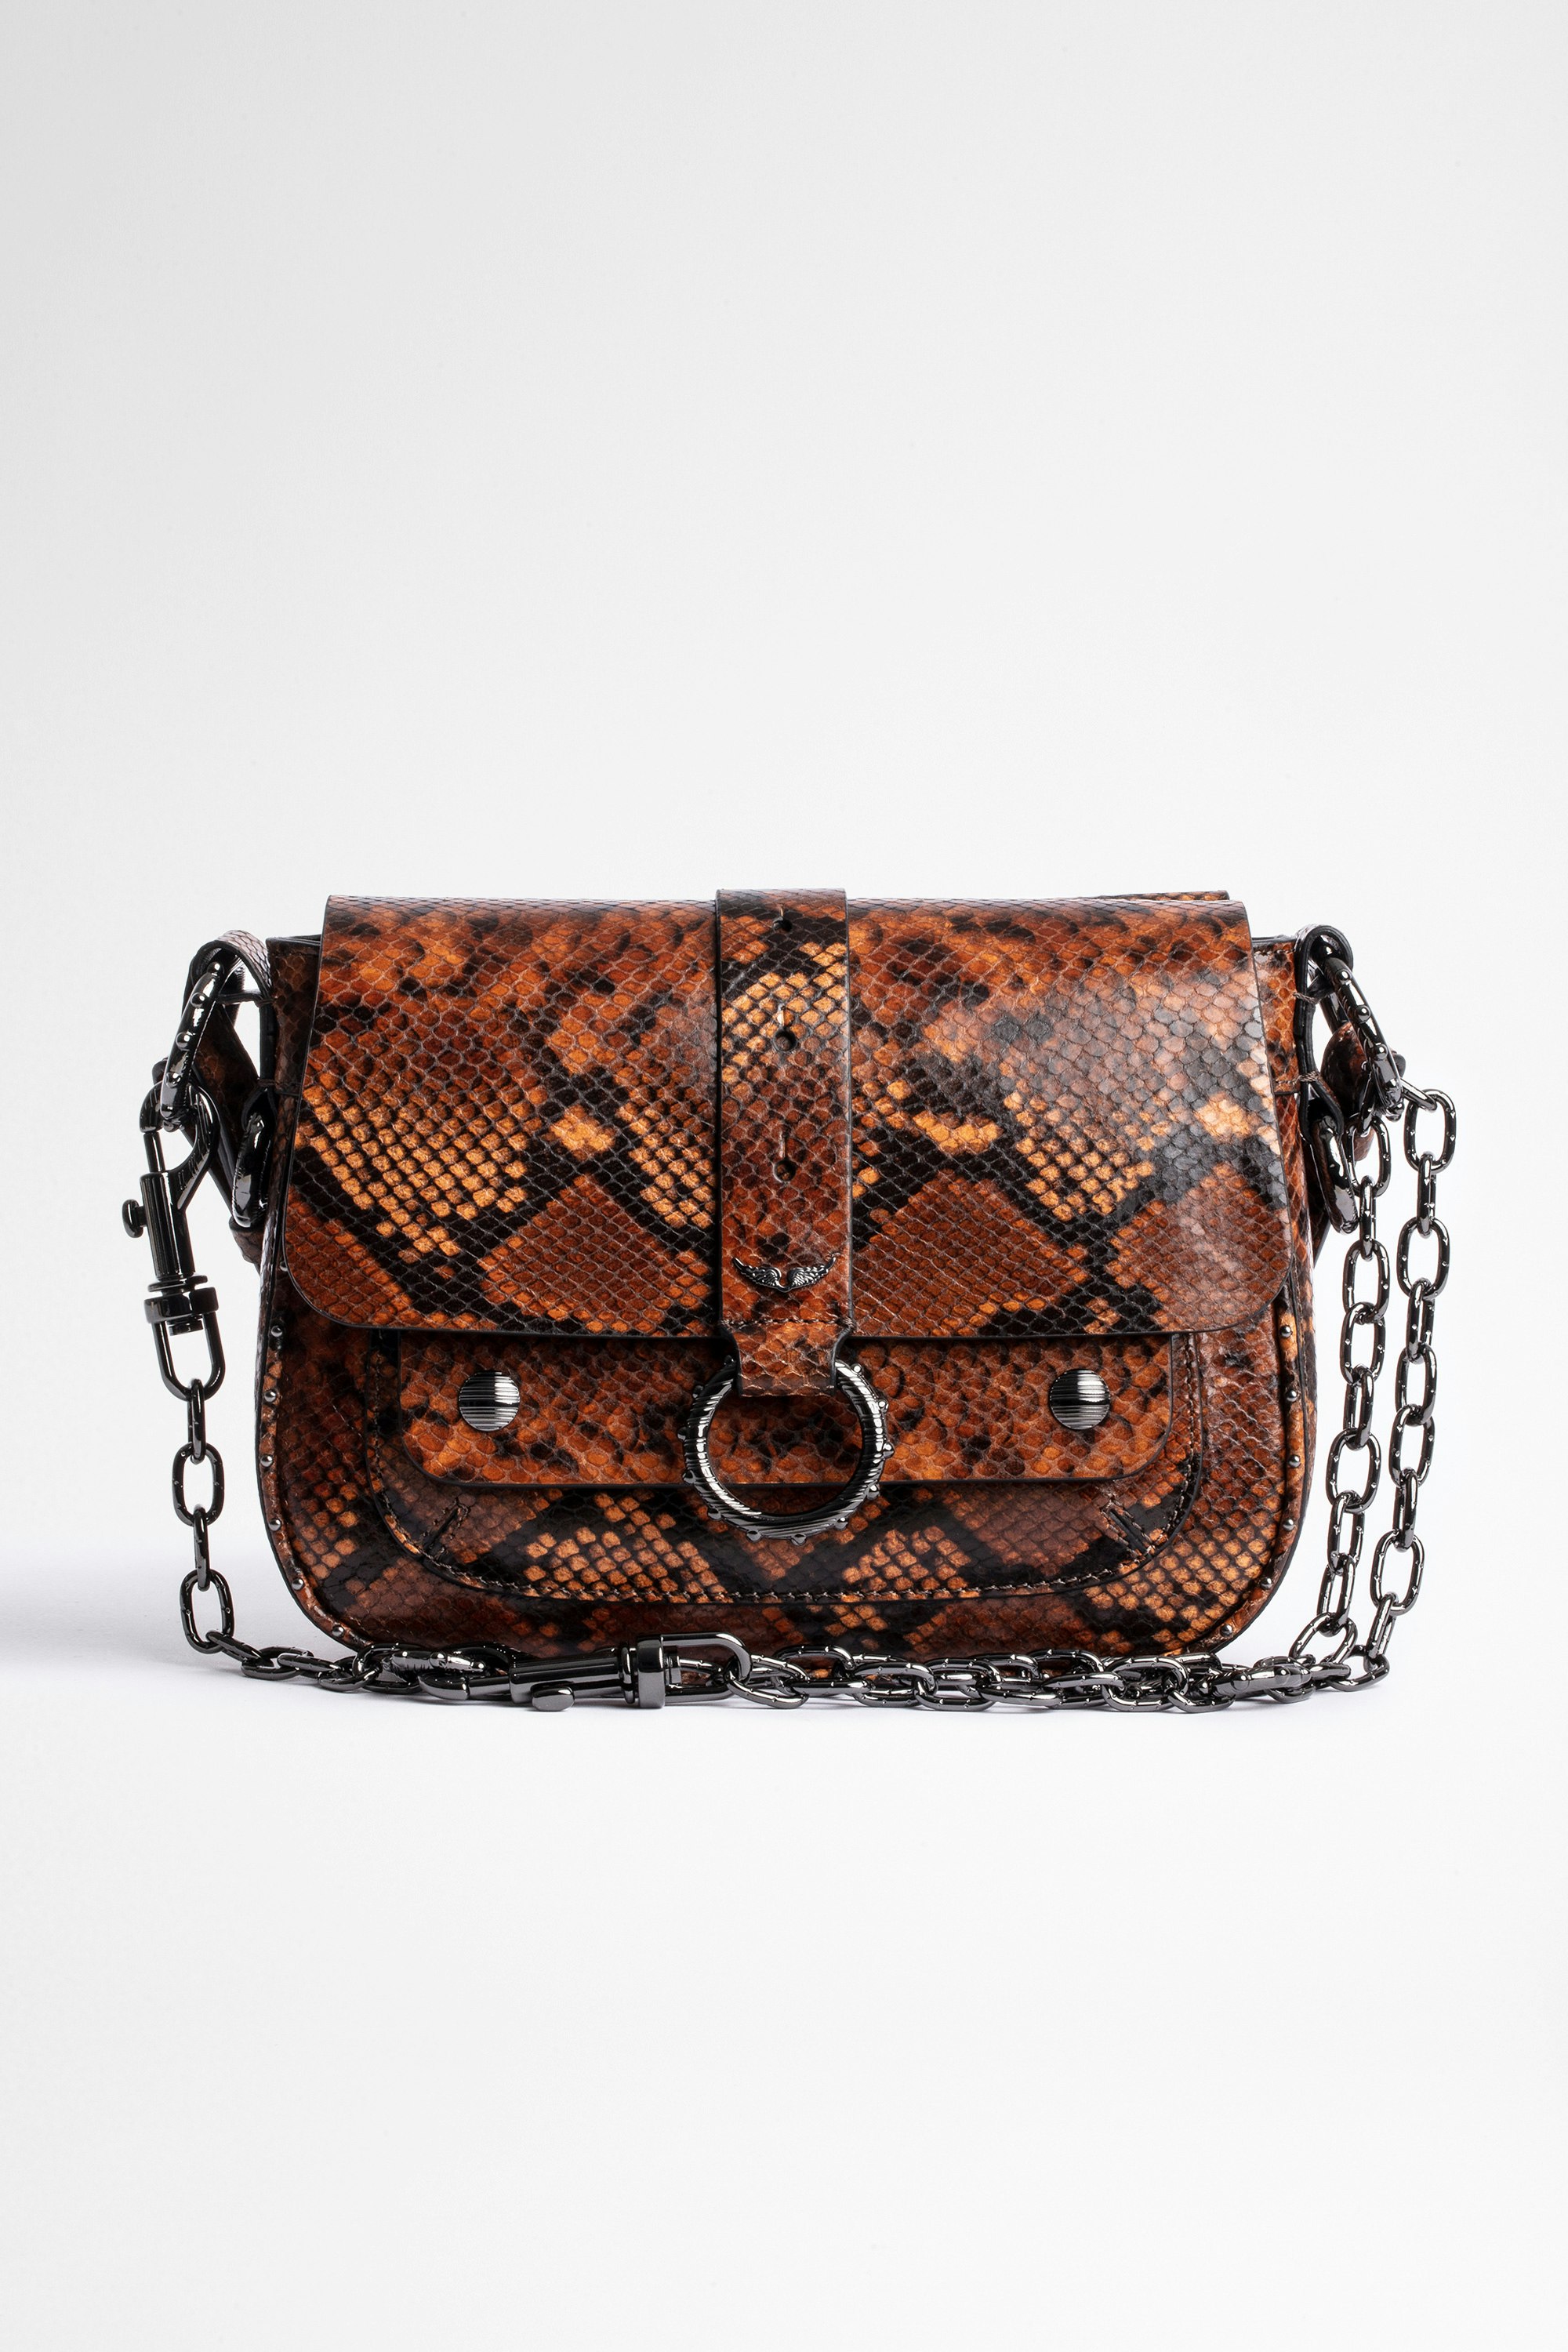 Tasche Kate Damentasche aus braunem Leder in Python-Optik. Mit dem Kauf dieses Produkts unterstützen Sie eine verantwortungsvolle Lederproduktion gemäß der Leather Working Group.